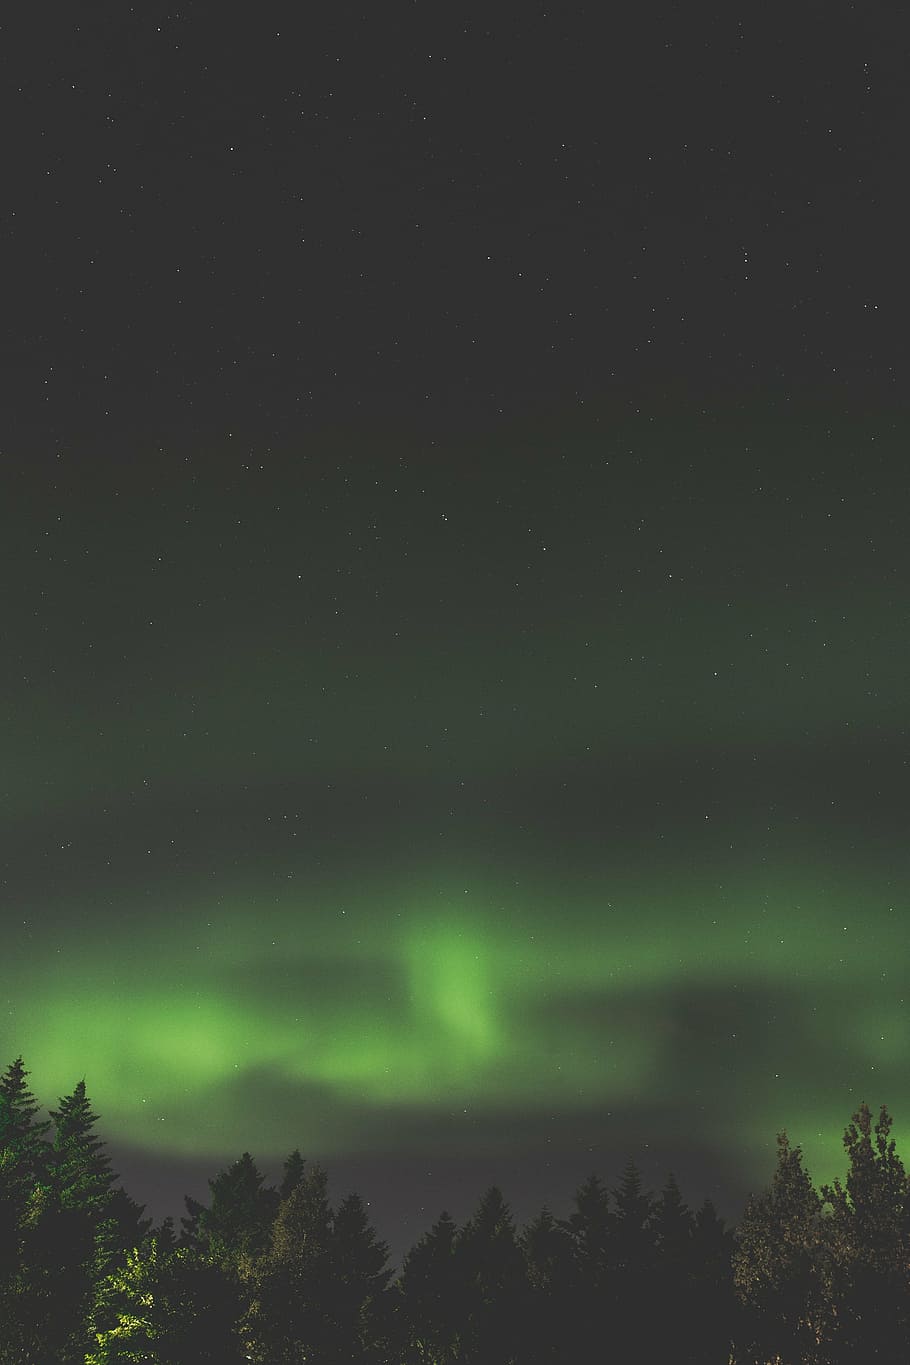 verde, norteño, luces, noche, aurora, boreal, espacio, estrellas, cielo, atmósfera